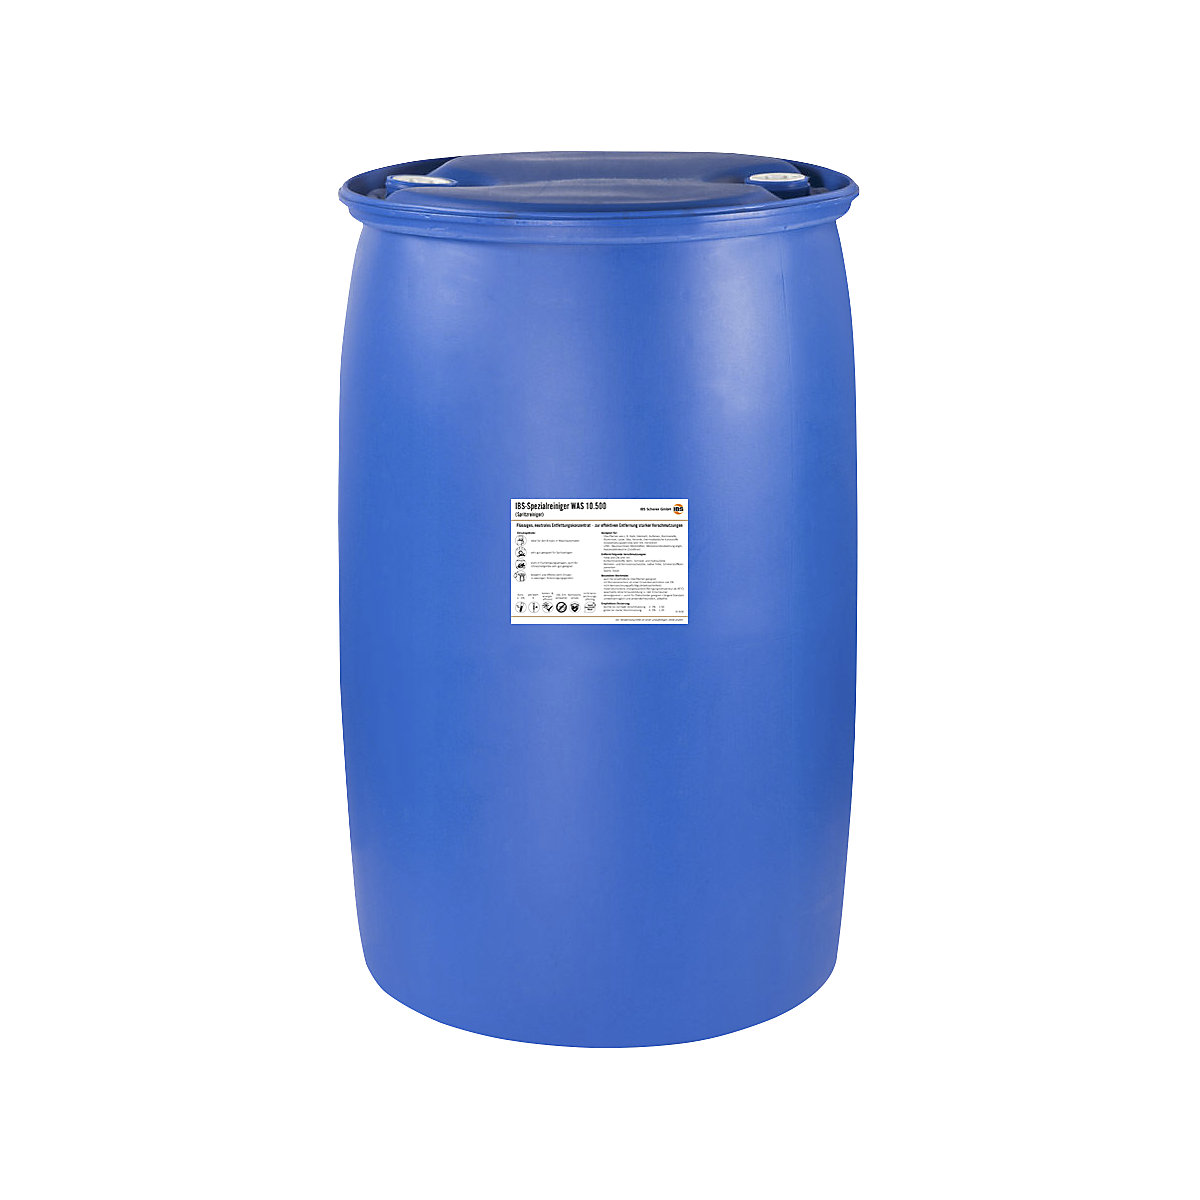 Produit nettoyant pour vaporisateur WAS 10.500 – IBS Scherer, valeur pH 9, fût de 200 litres-2